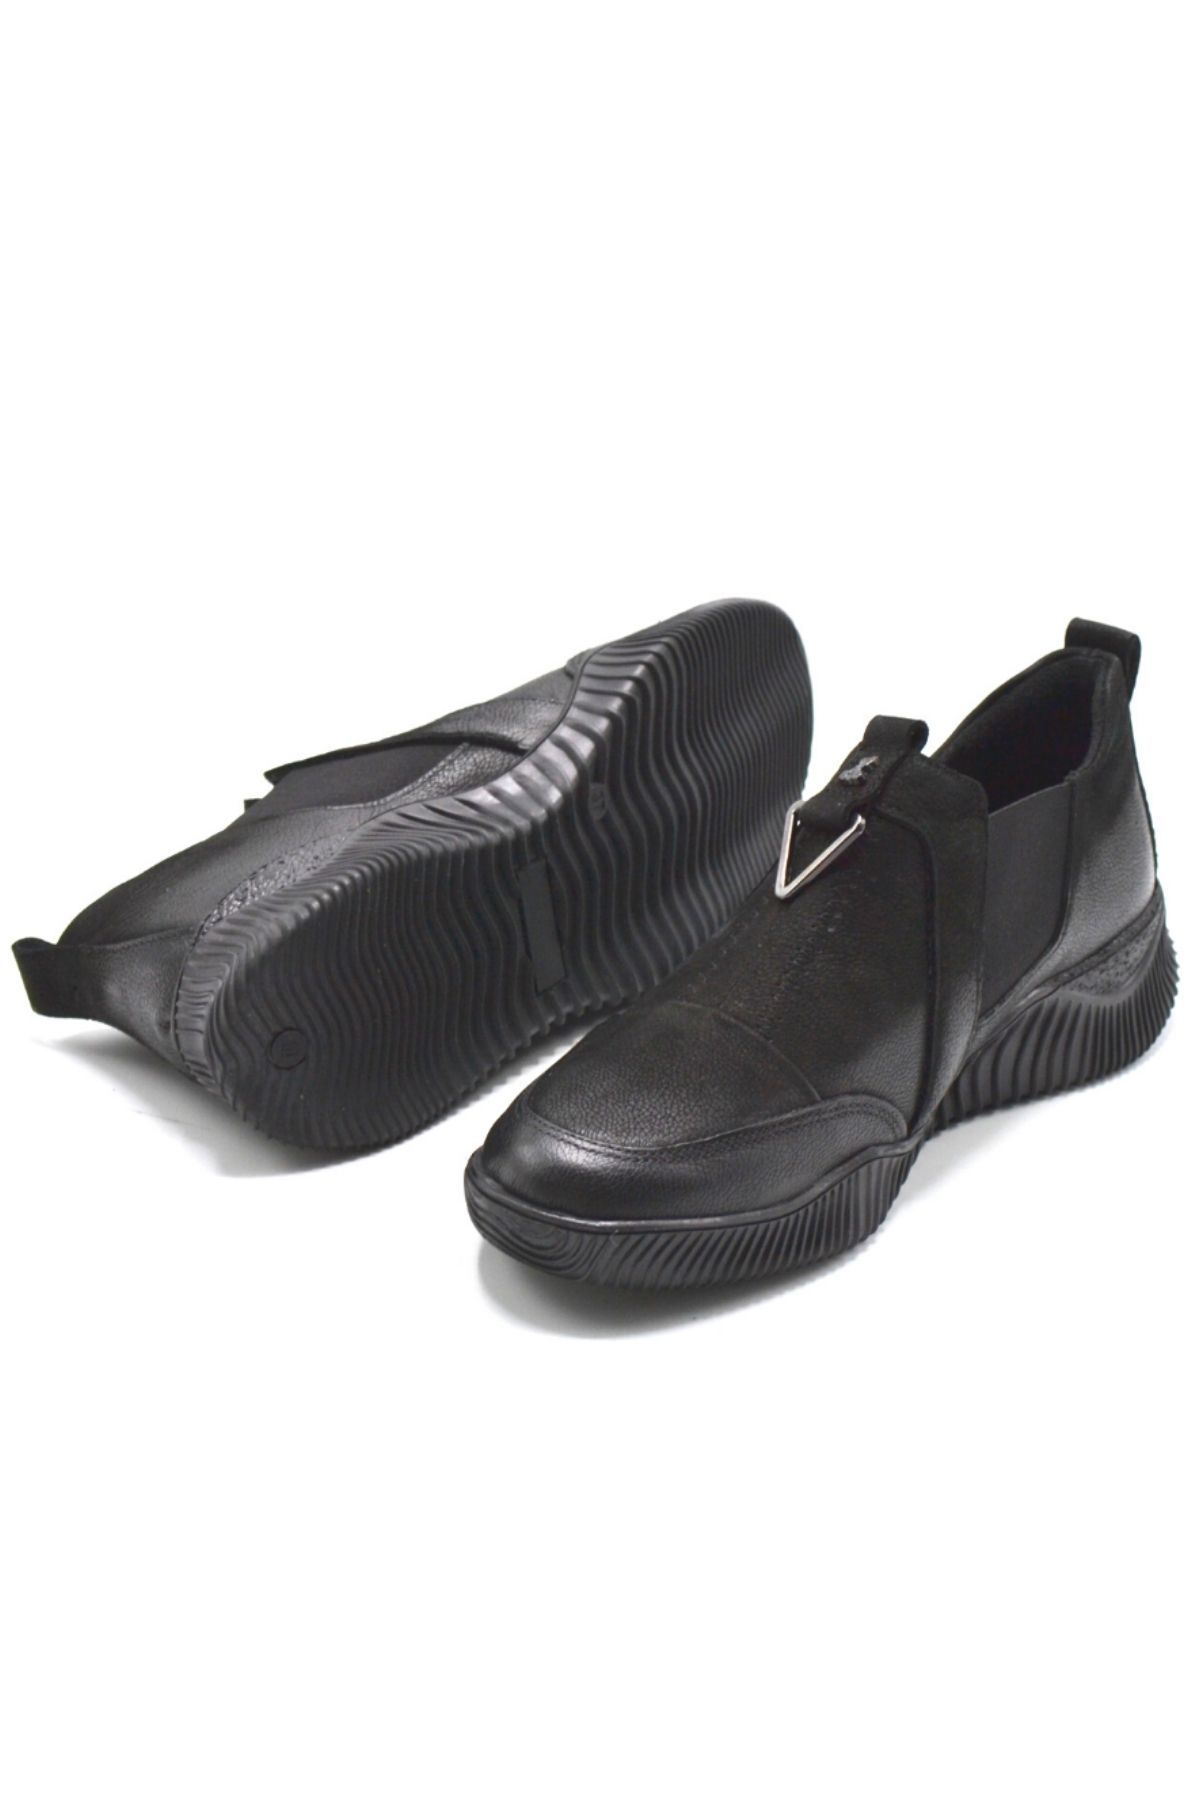 Kadın Comfort Deri Ayakkabı Siyah 1953840K